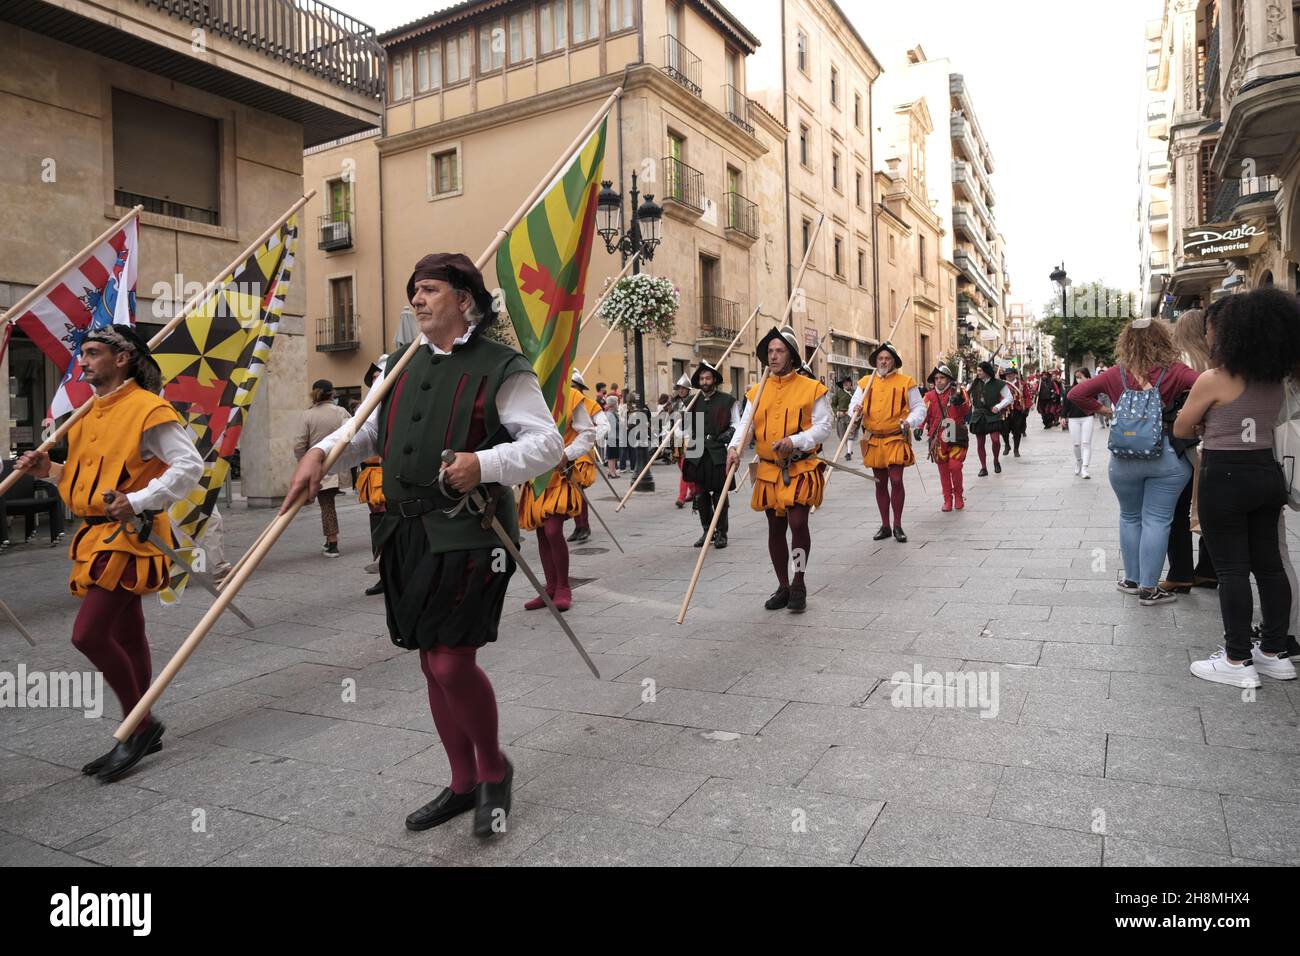 Festival traditionnel espagnol, dans la région de Castilla y Leon, Salamanque: Défilé en costumes traditionnels. Banque D'Images